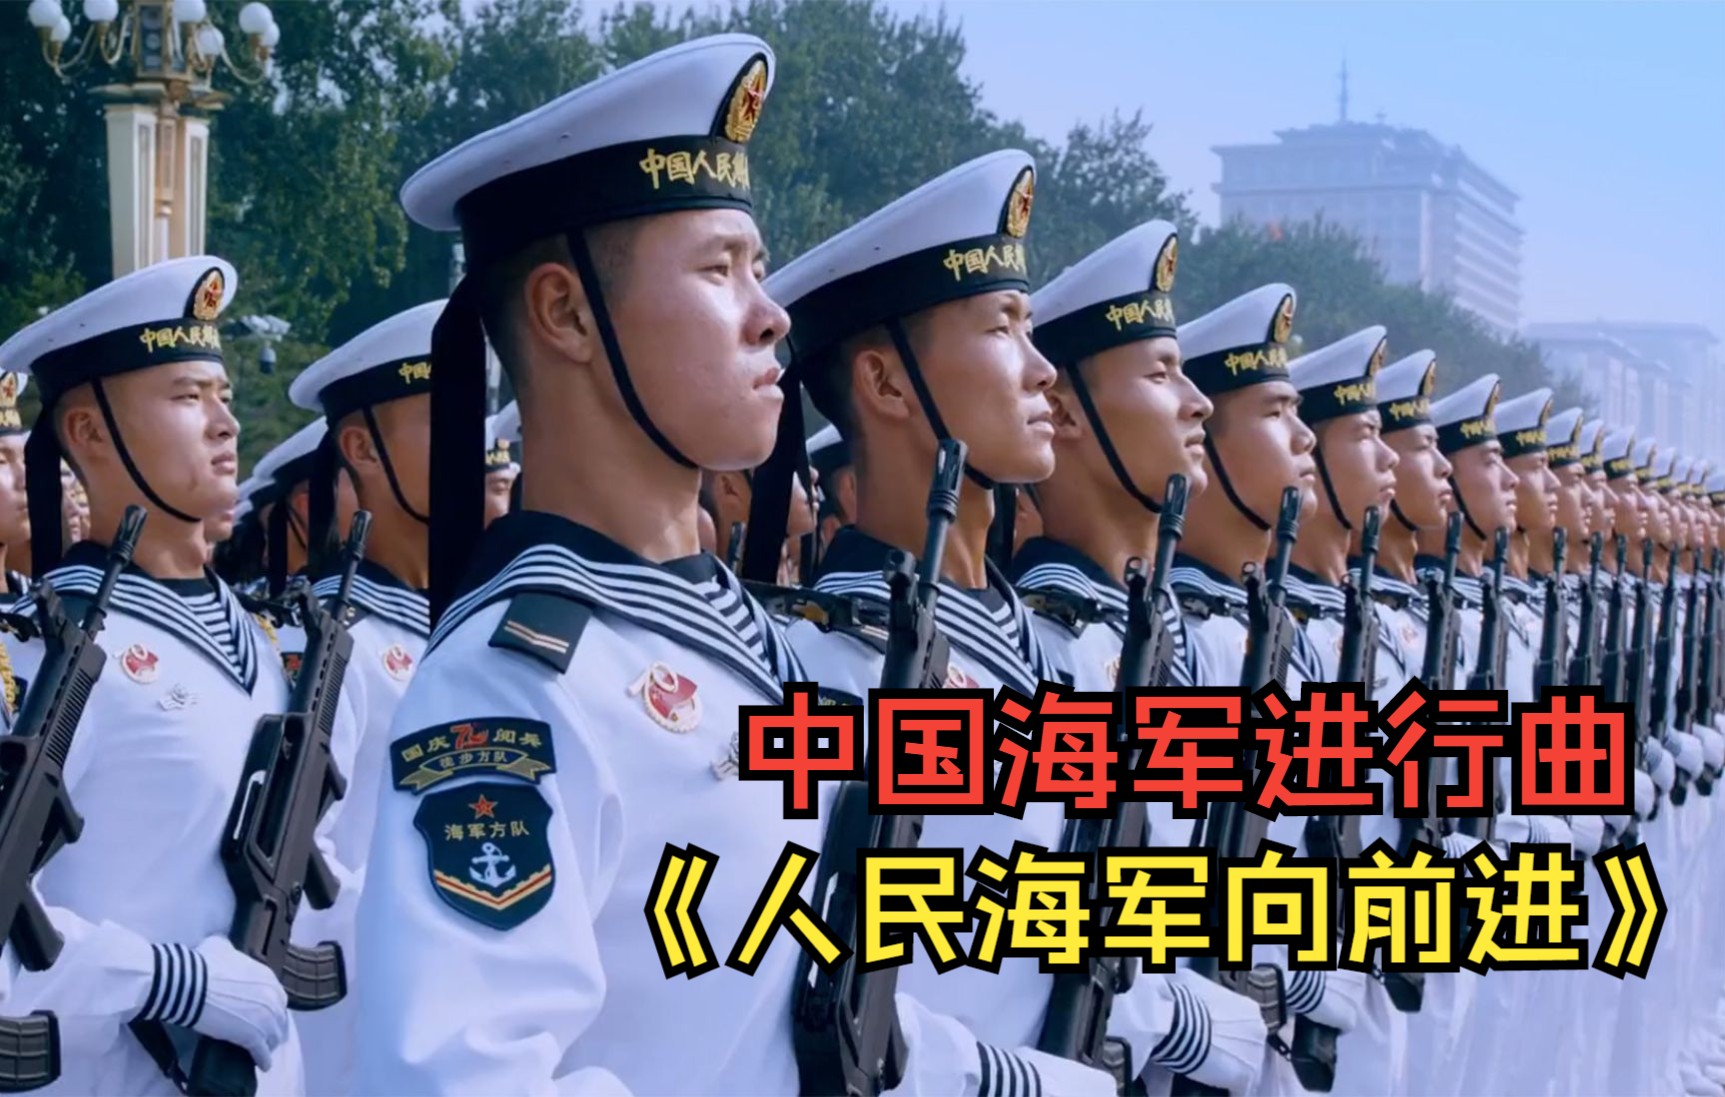 铿锵有力的中国海军进行曲人民海军向前进